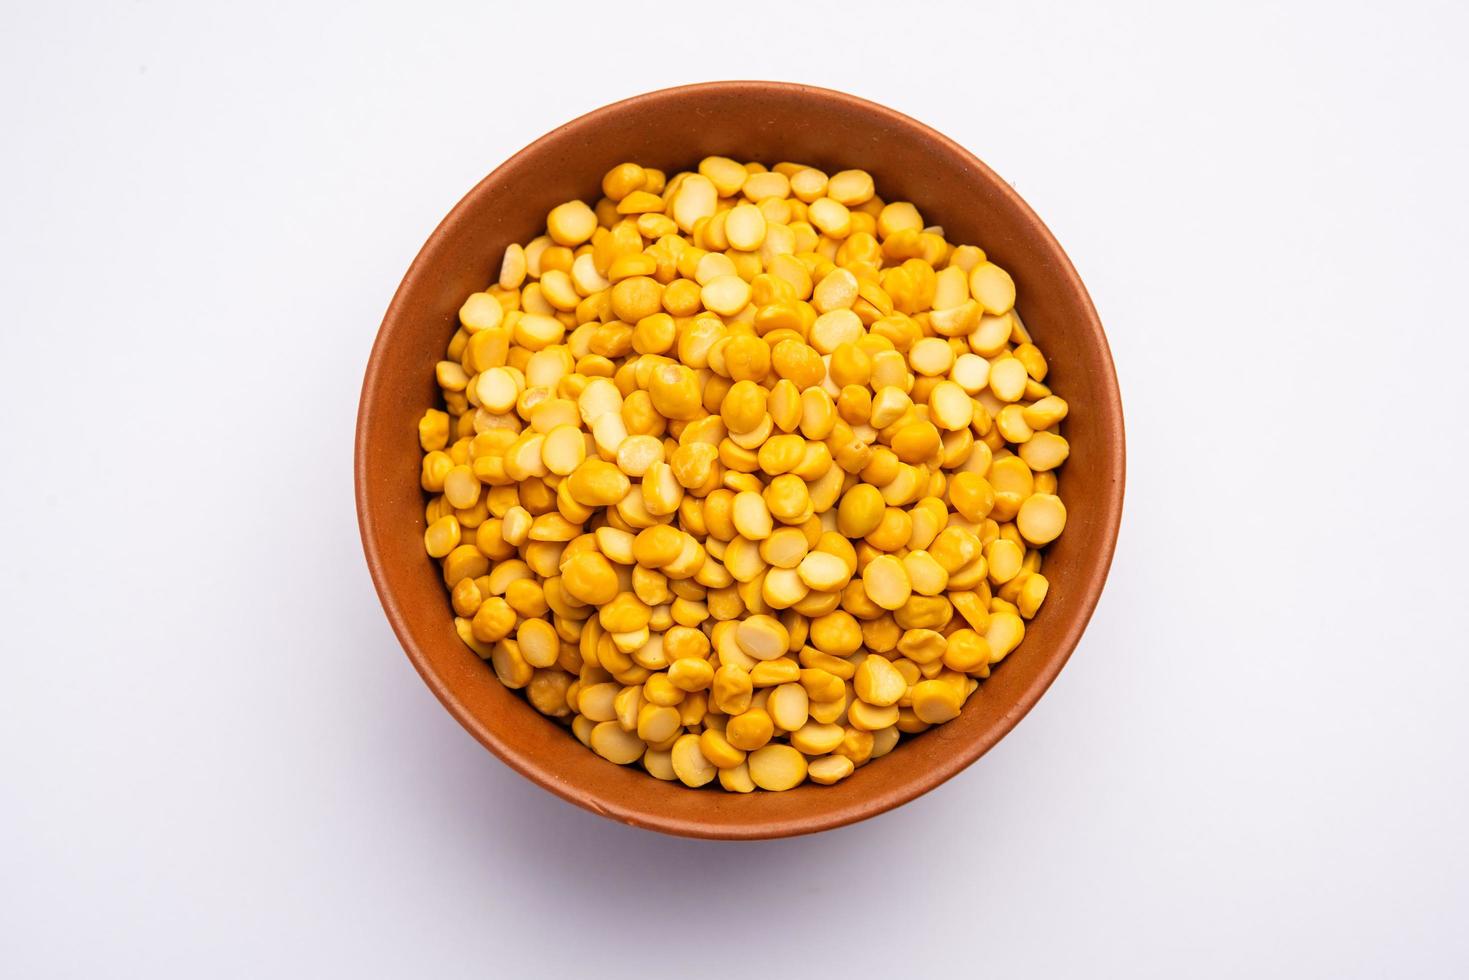 grão de bico dividido também conhecido como chana dal, ervilhas amarelas chana, lentilhas secas de grão de bico foto